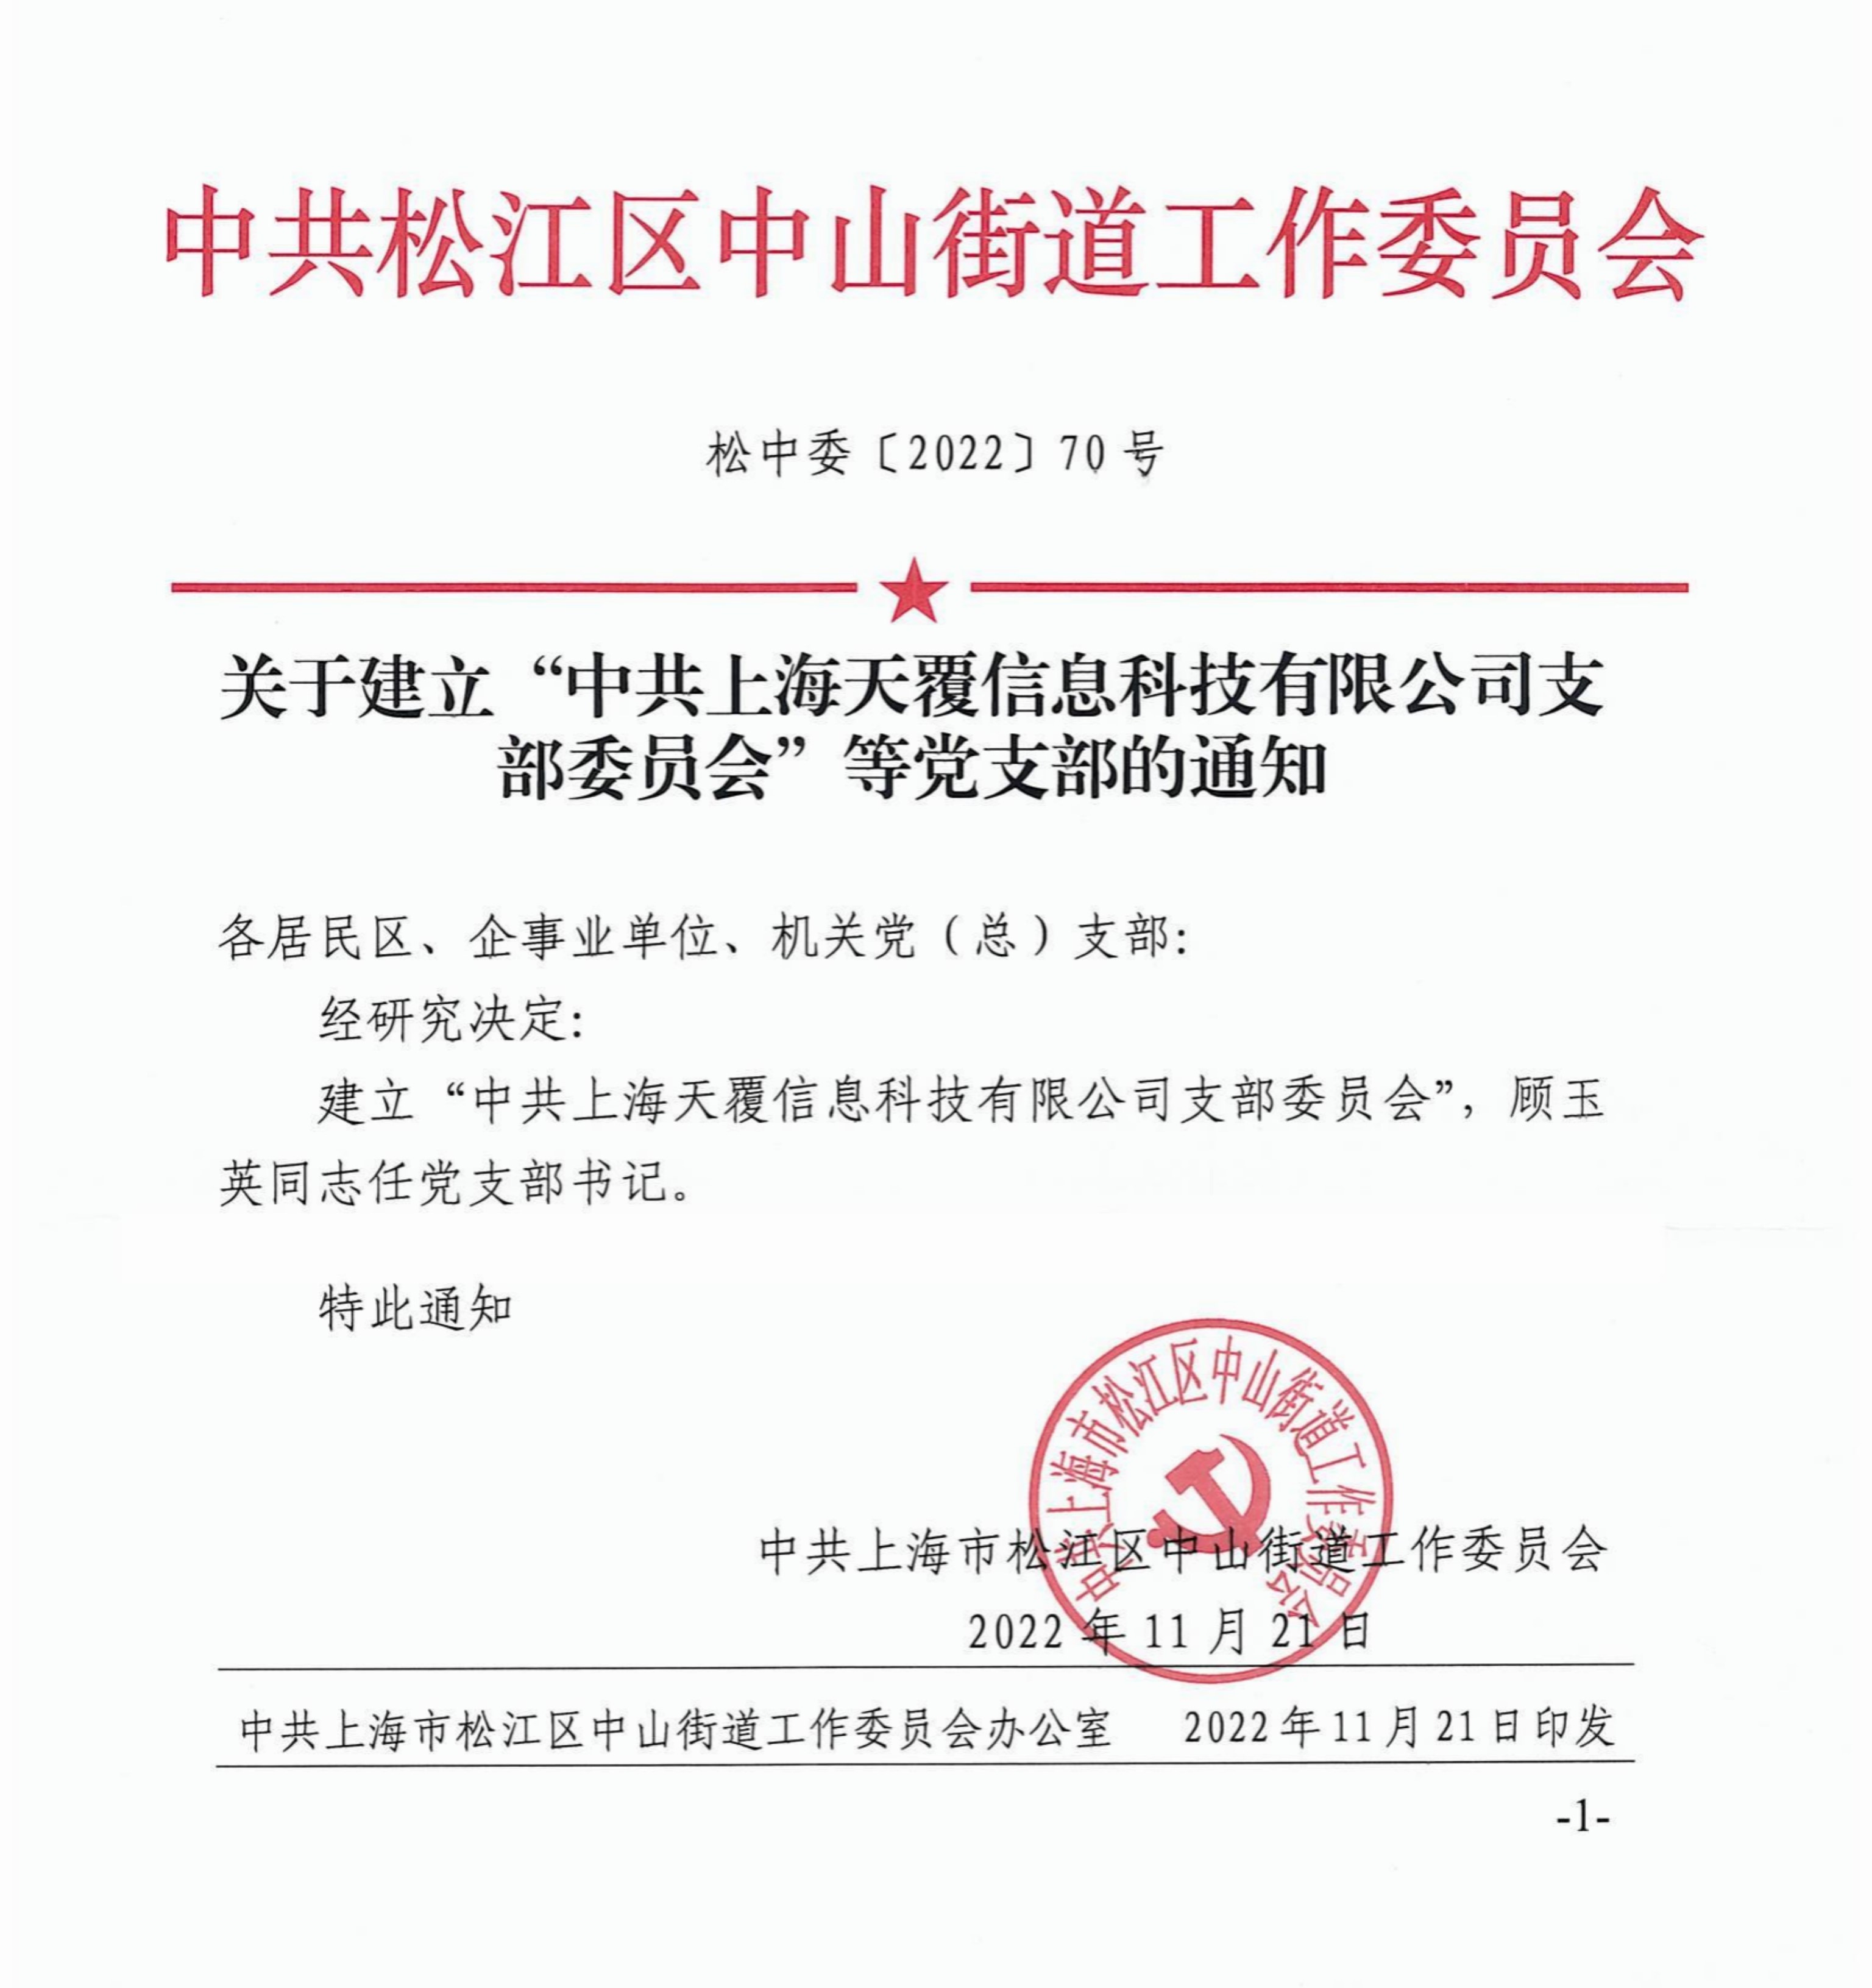 不忘初心，跟党走——热烈庆祝上海天覆信息科技有限公司党支部成立